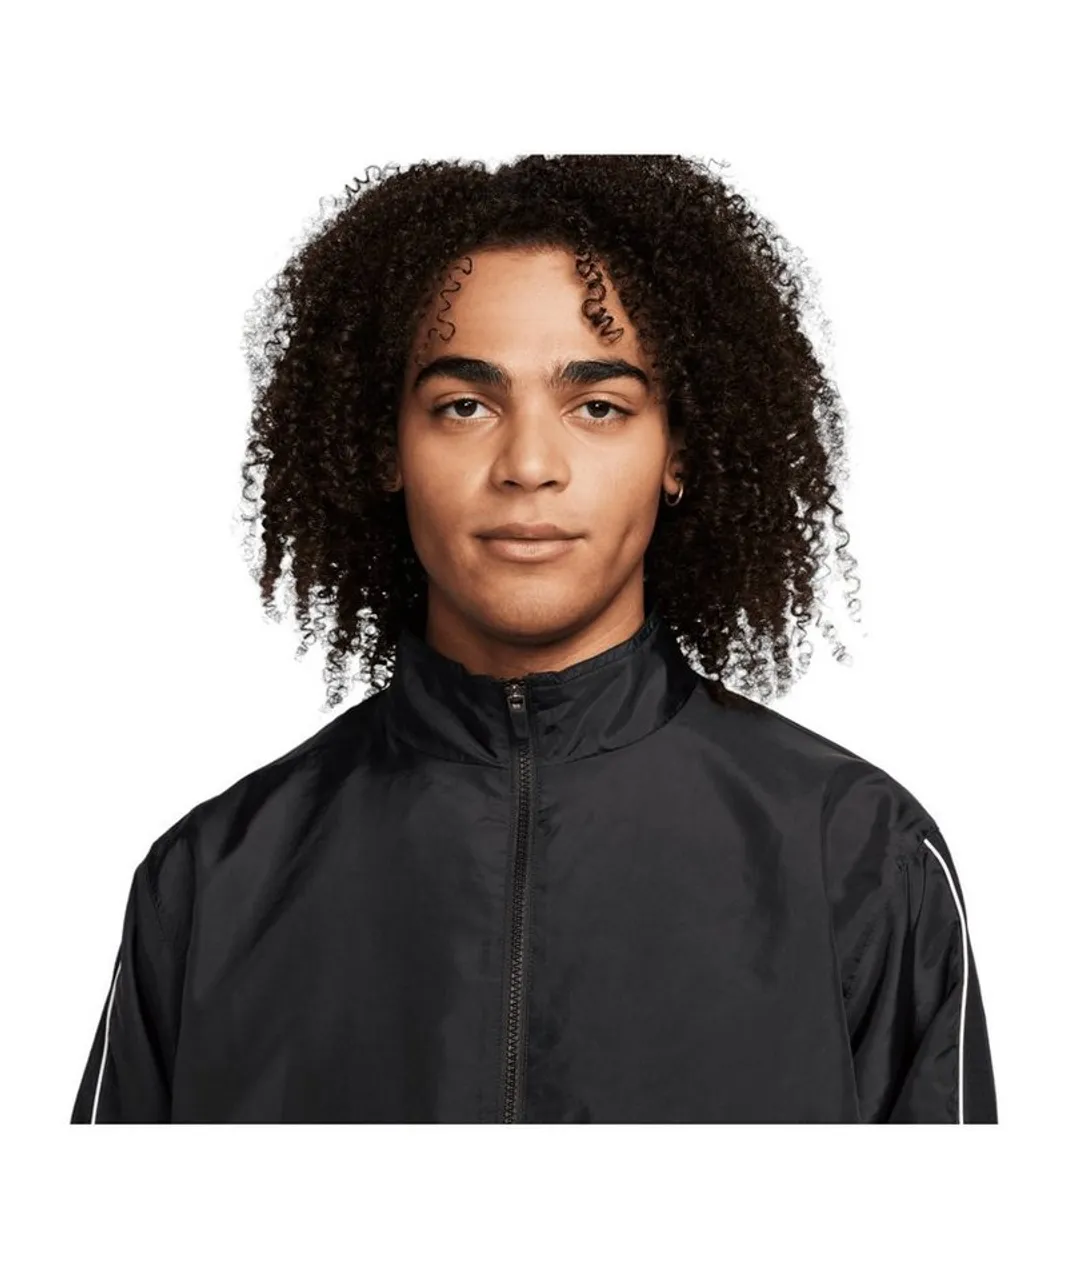 Nike Sportswear Sweatjacke Woven Air Jacke